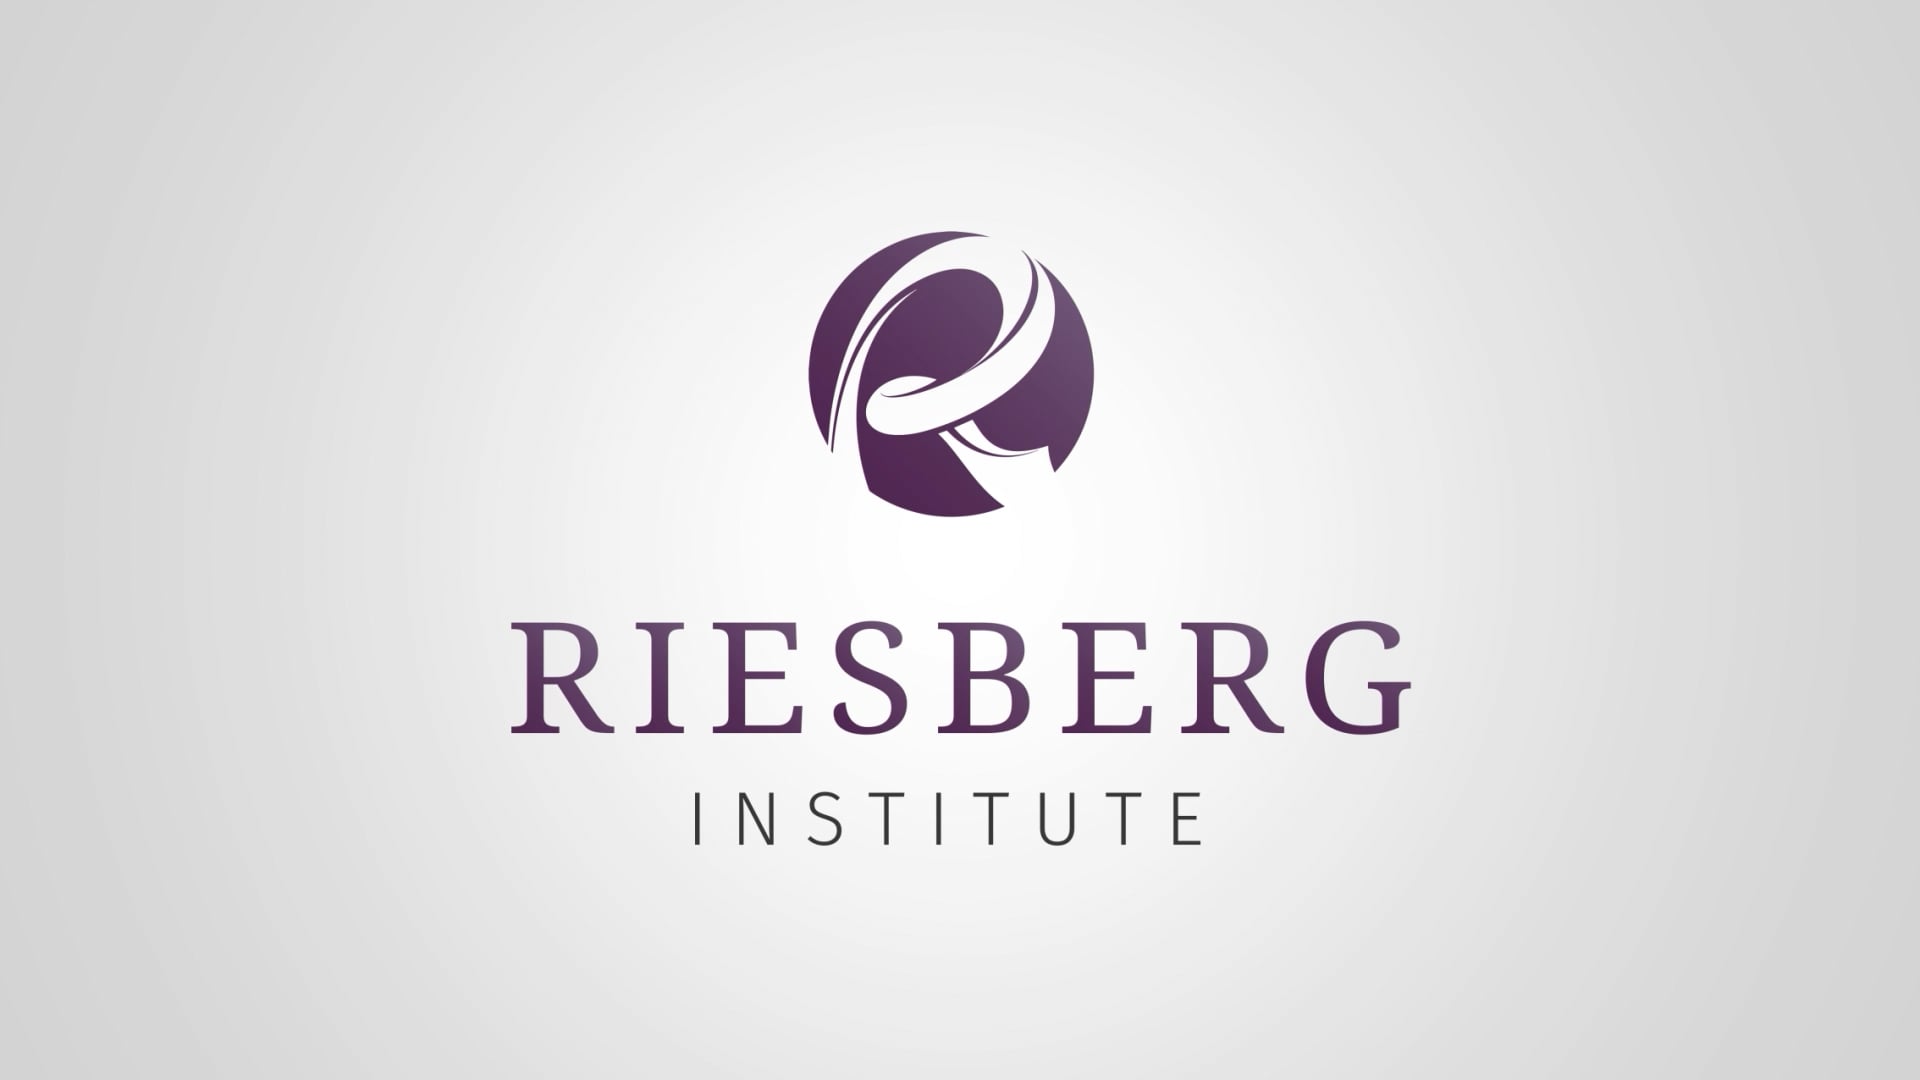 The Riesberg Institute